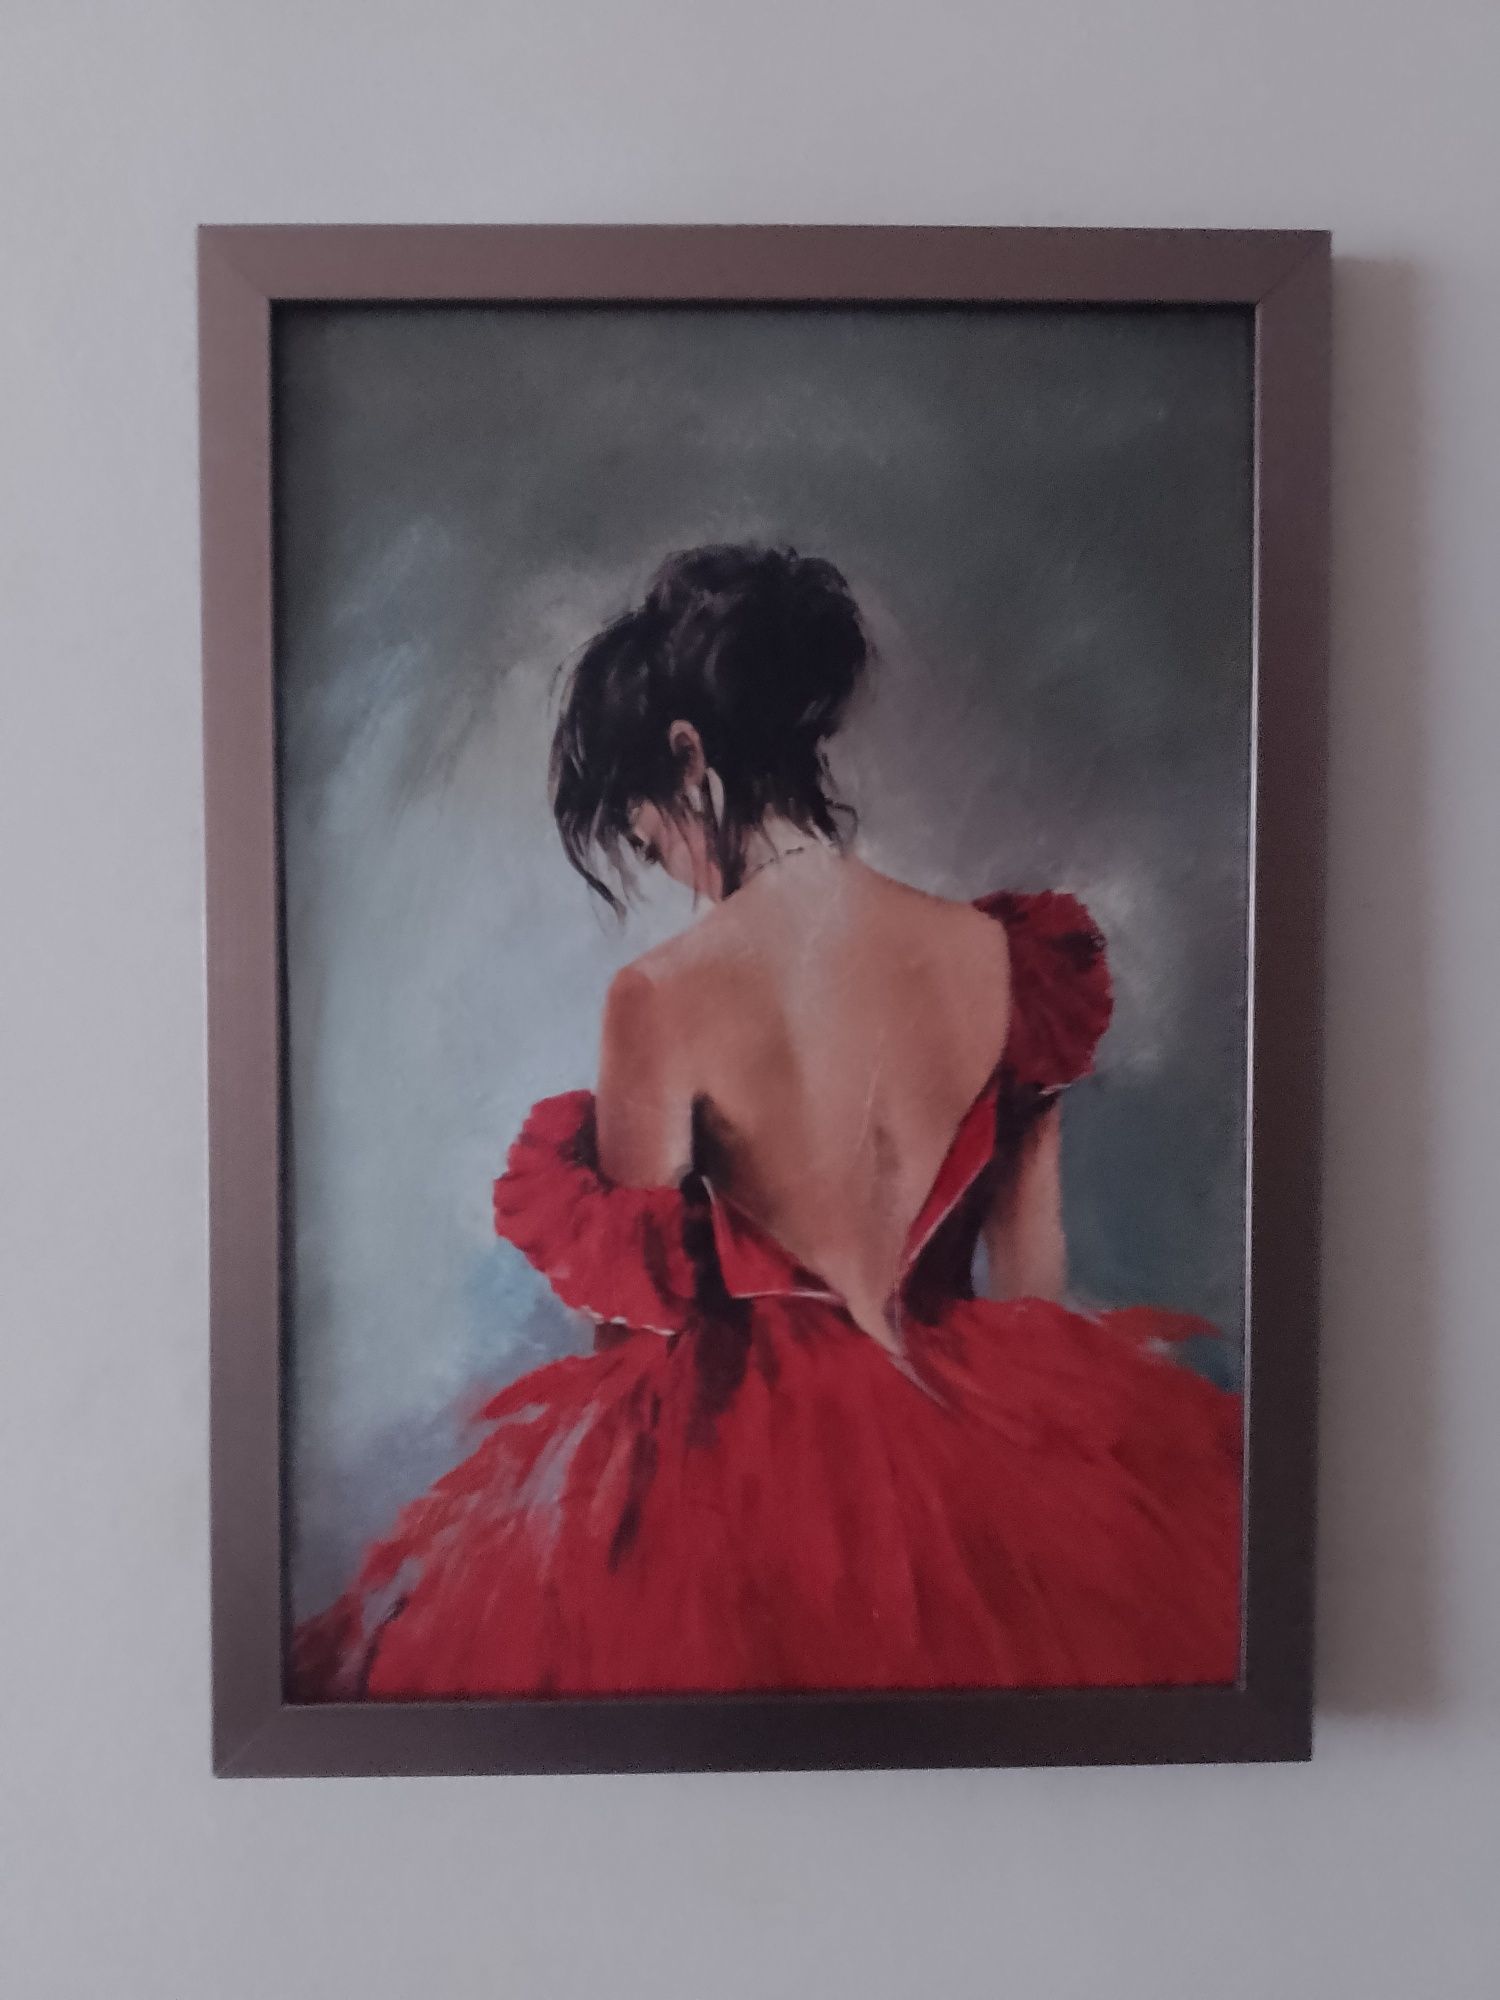 Dekoracja Obraz do pokoju salonu Kobieta w czerwonej sukni Ramka 40x30